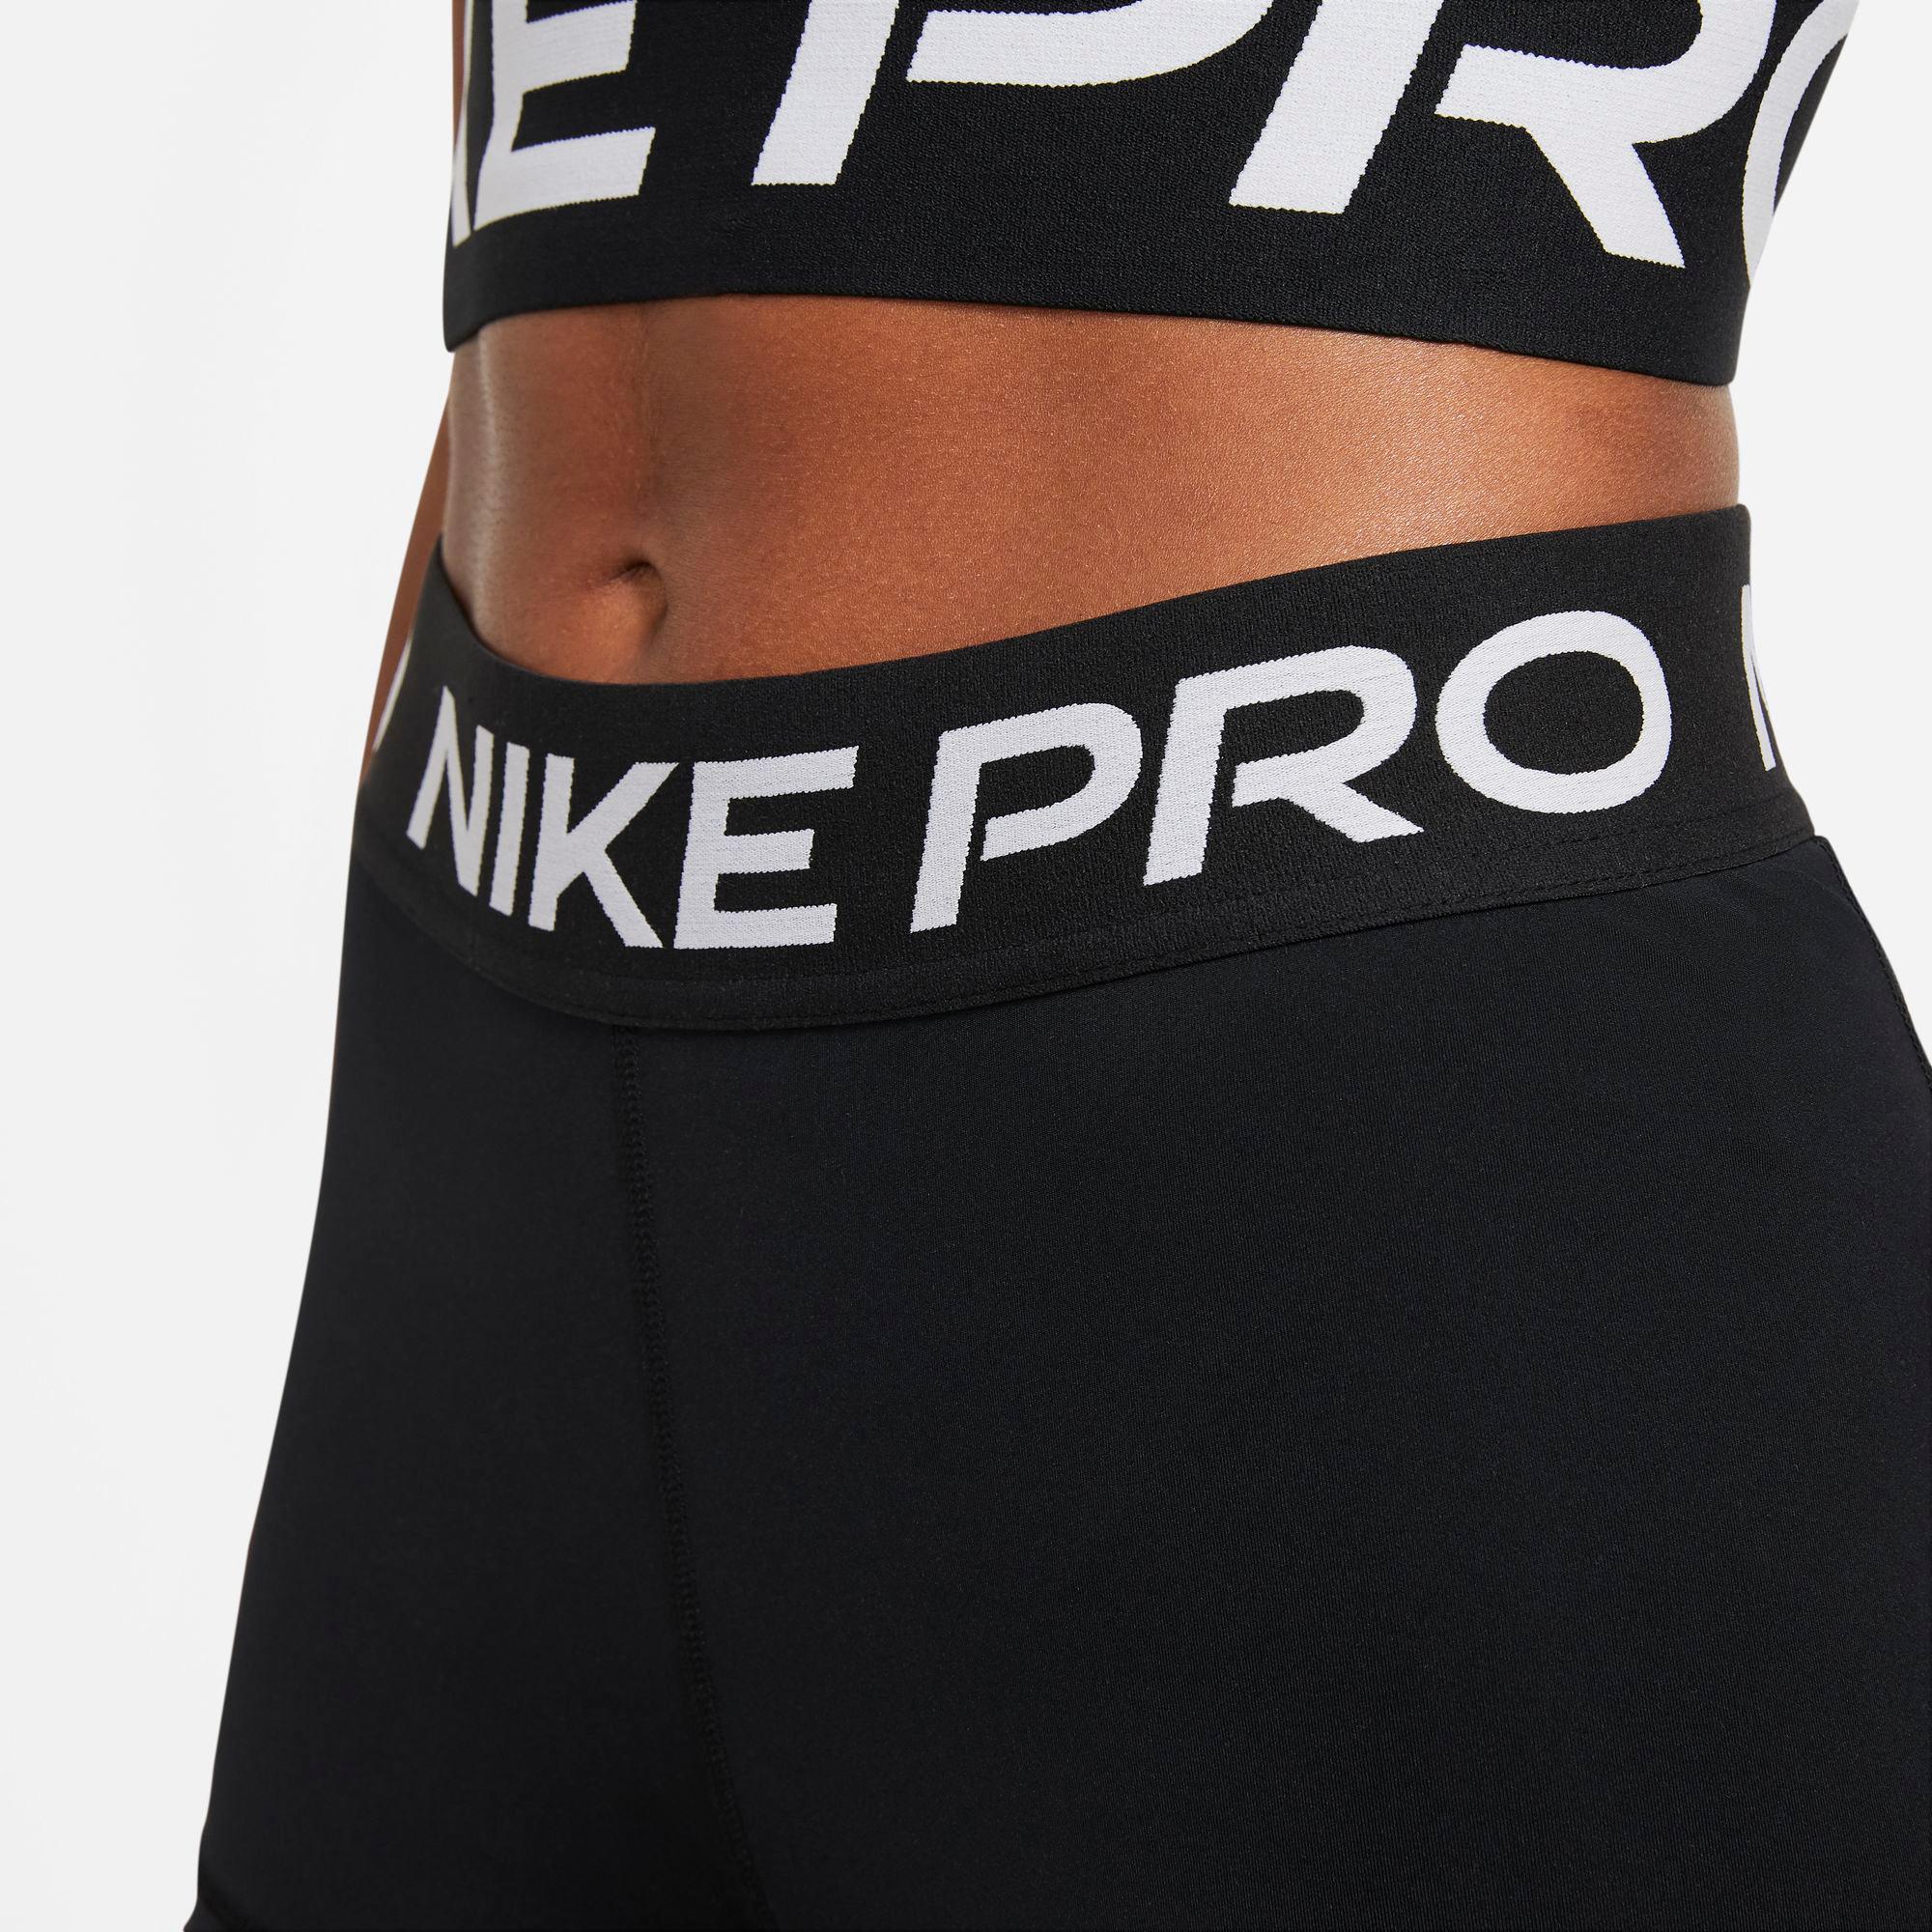 Online im SportScheck black-white PRO Nike Funktionsshorts Damen 365 kaufen Shop von